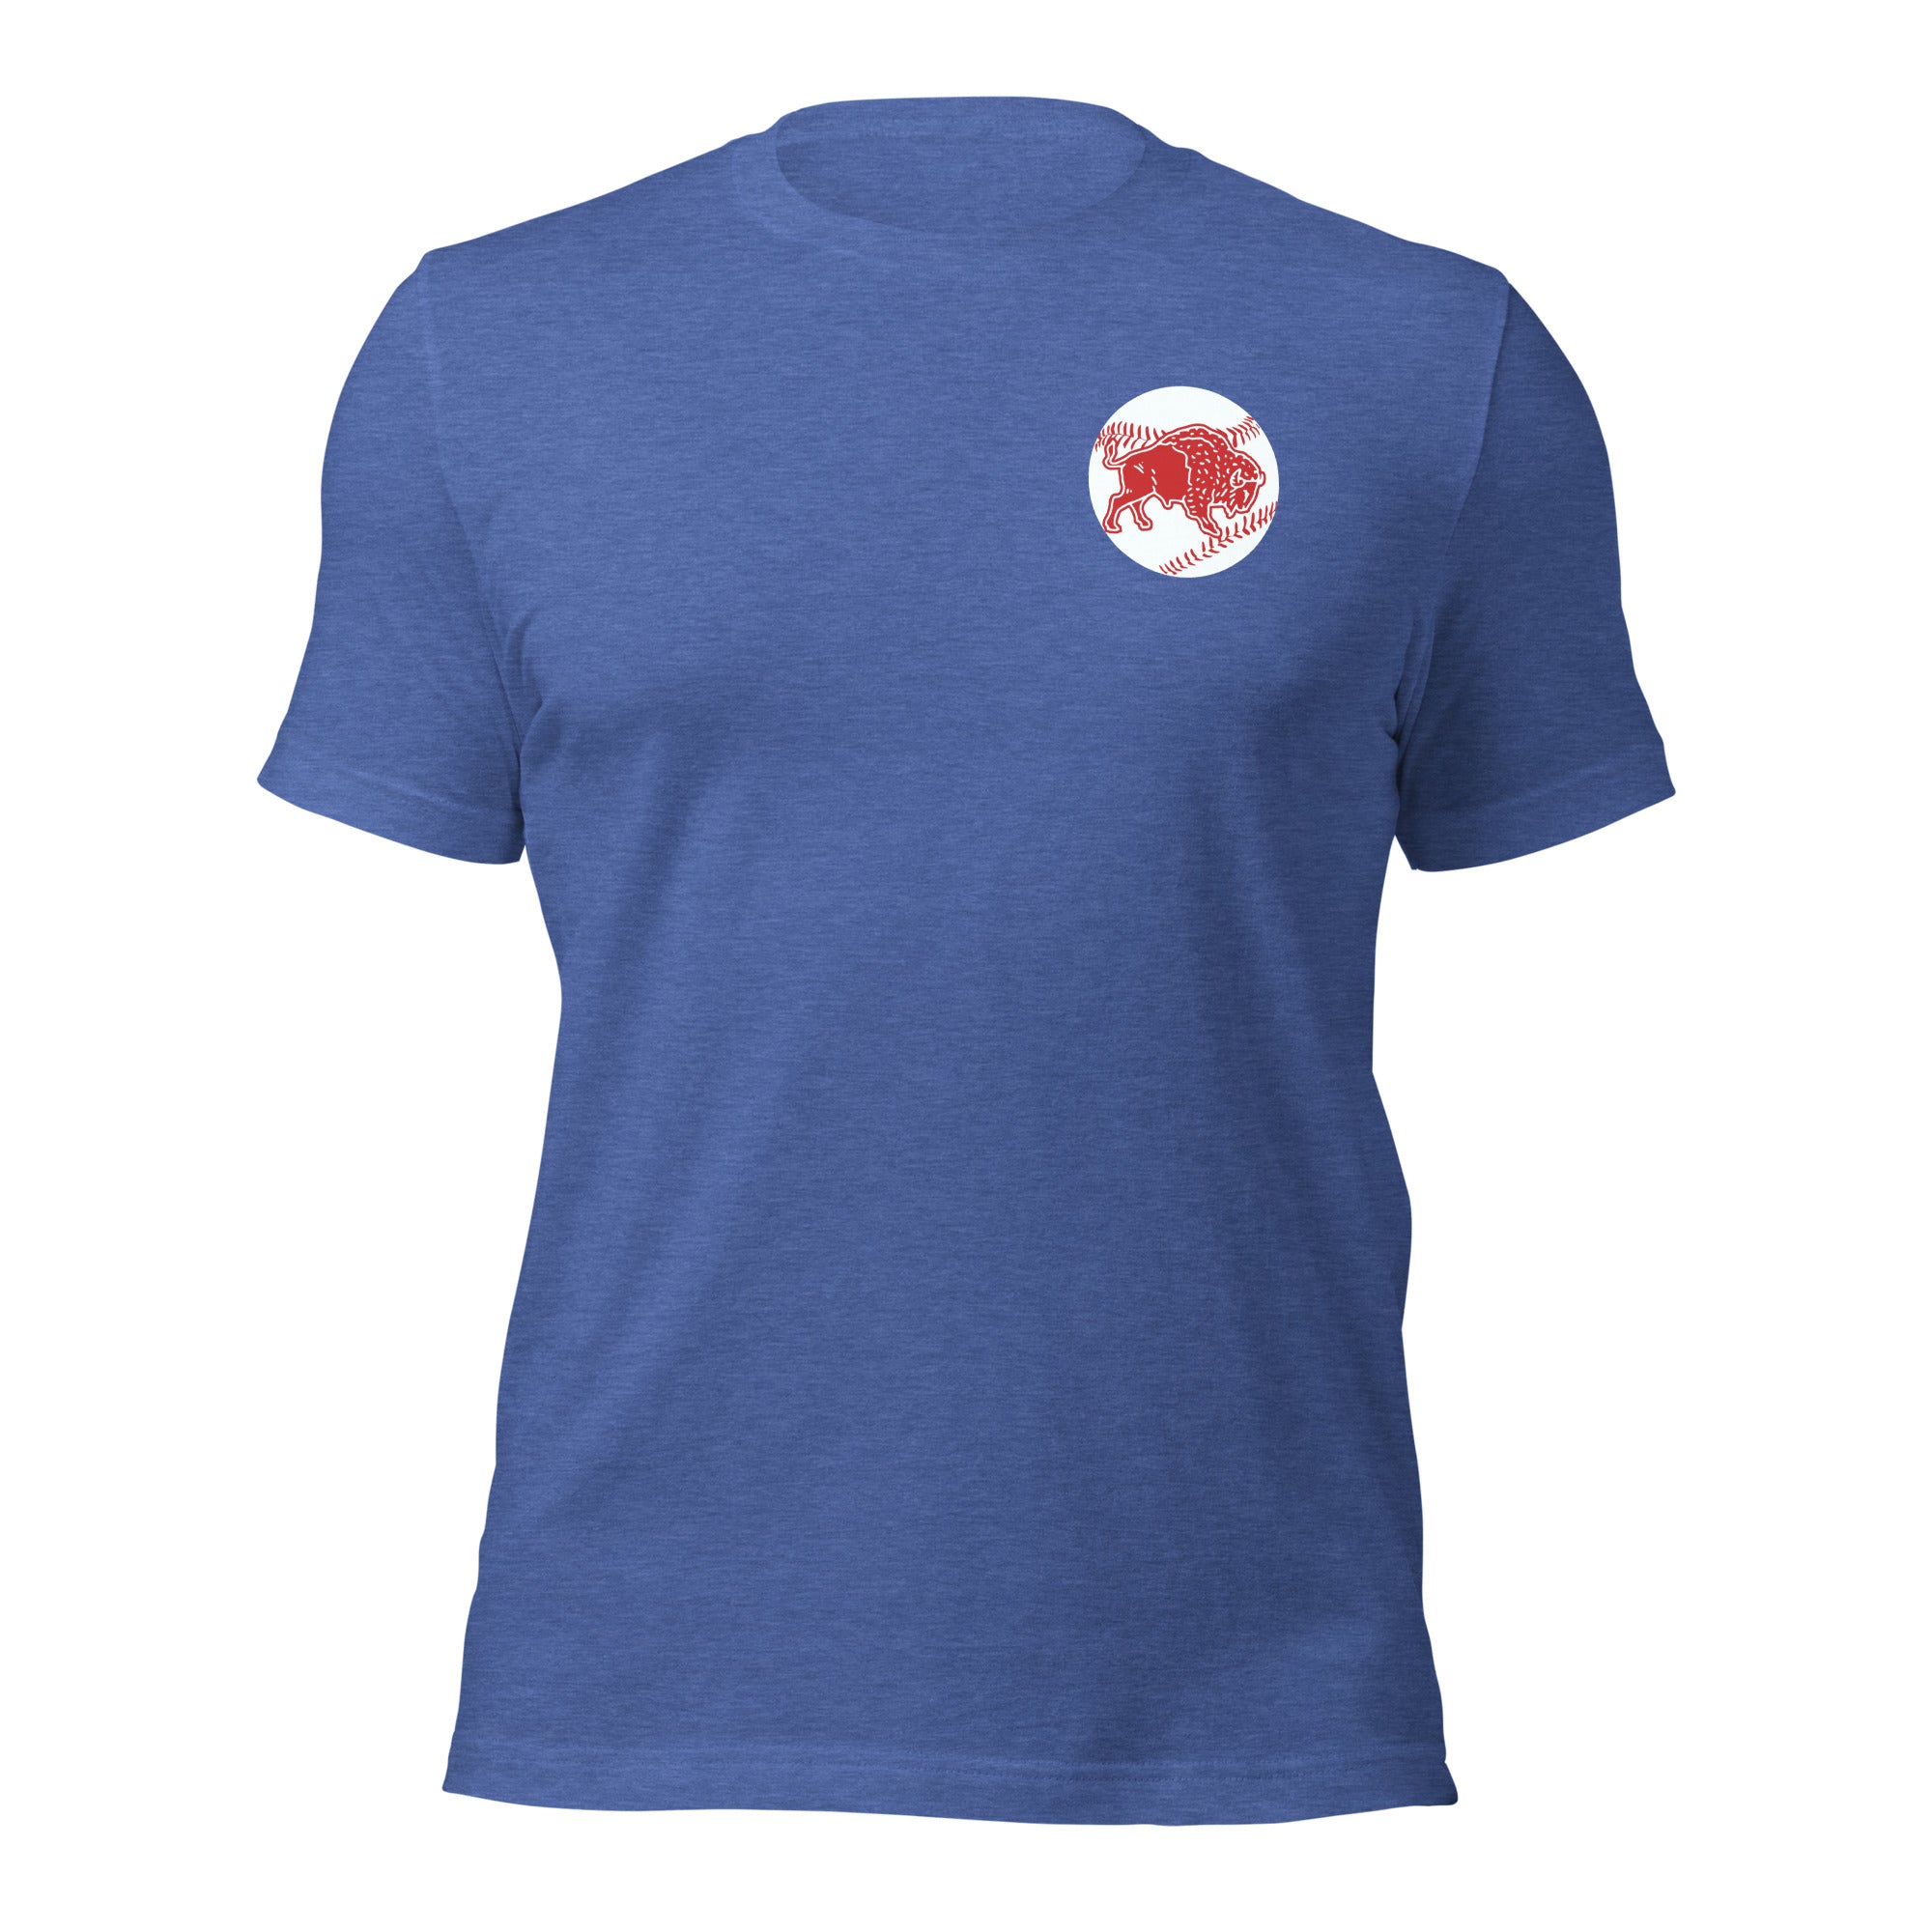 Wild Leap Baseball T-shirt